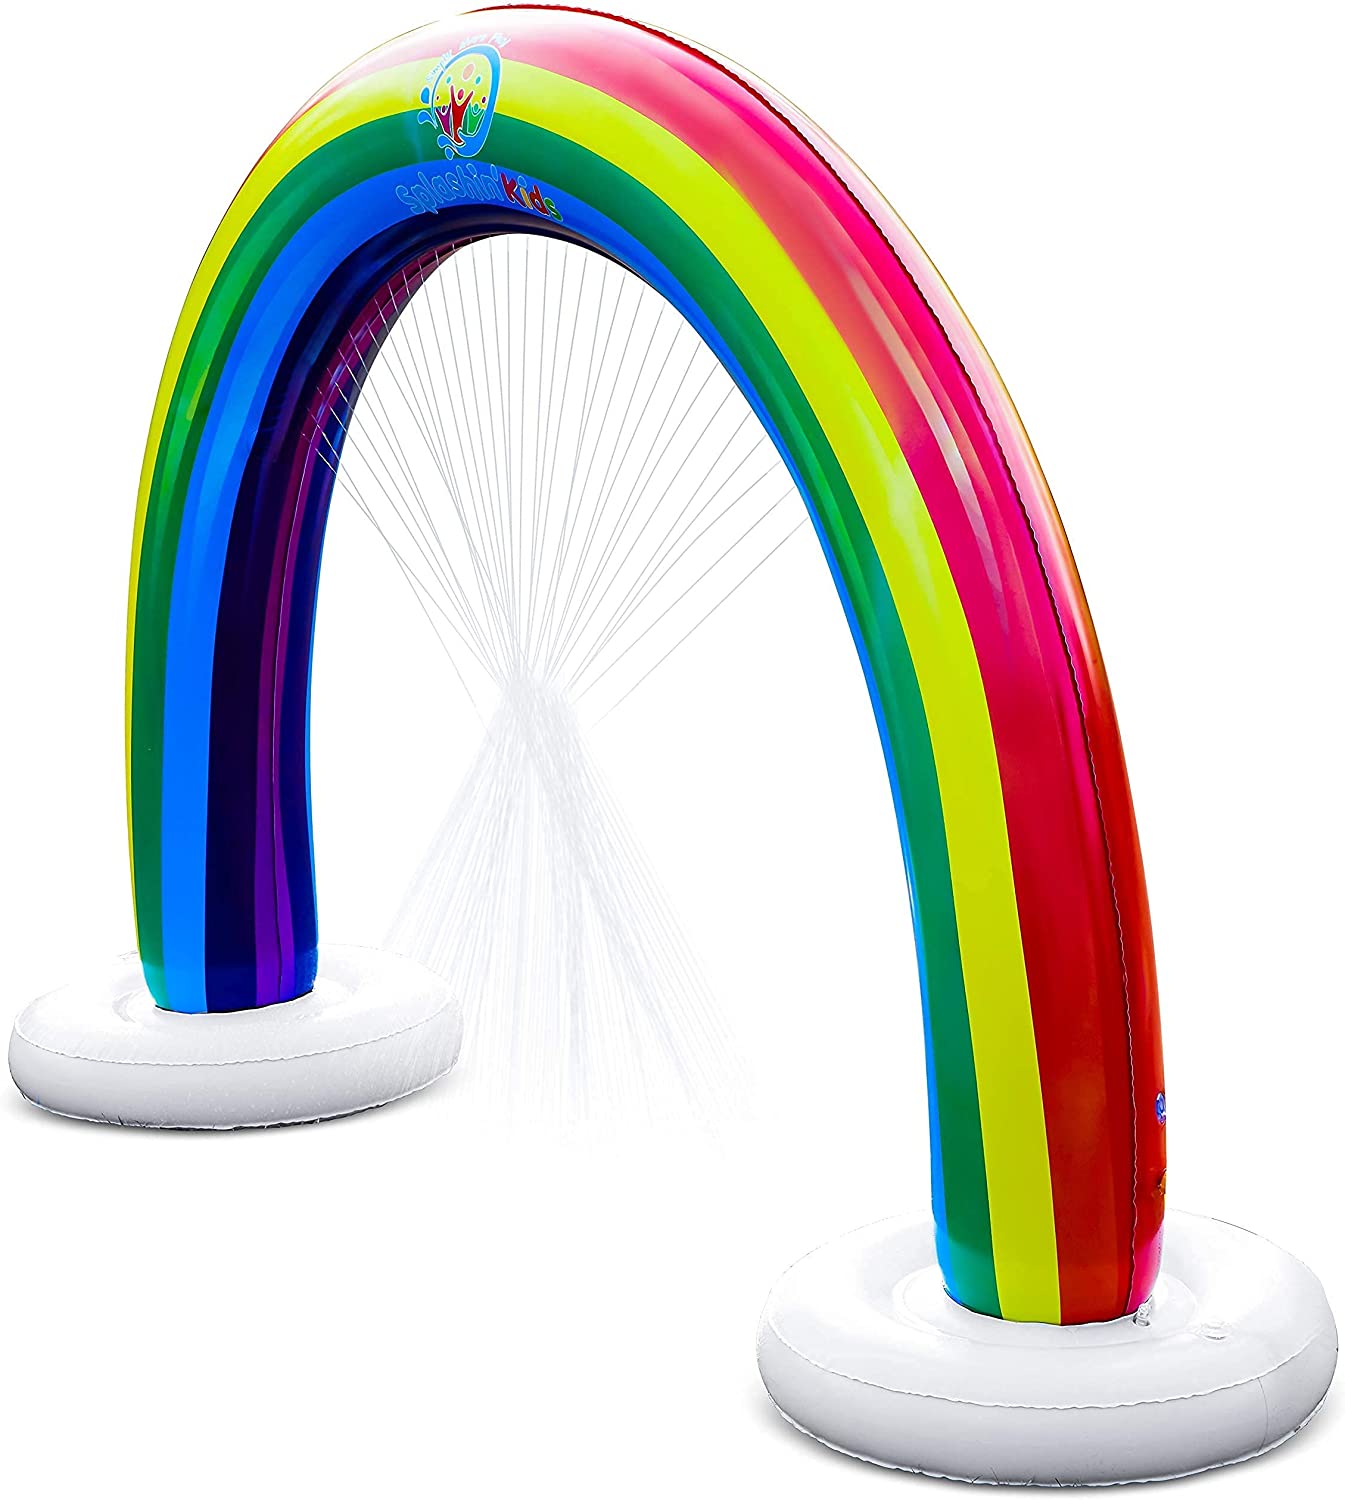 arch rainbow sprinkler